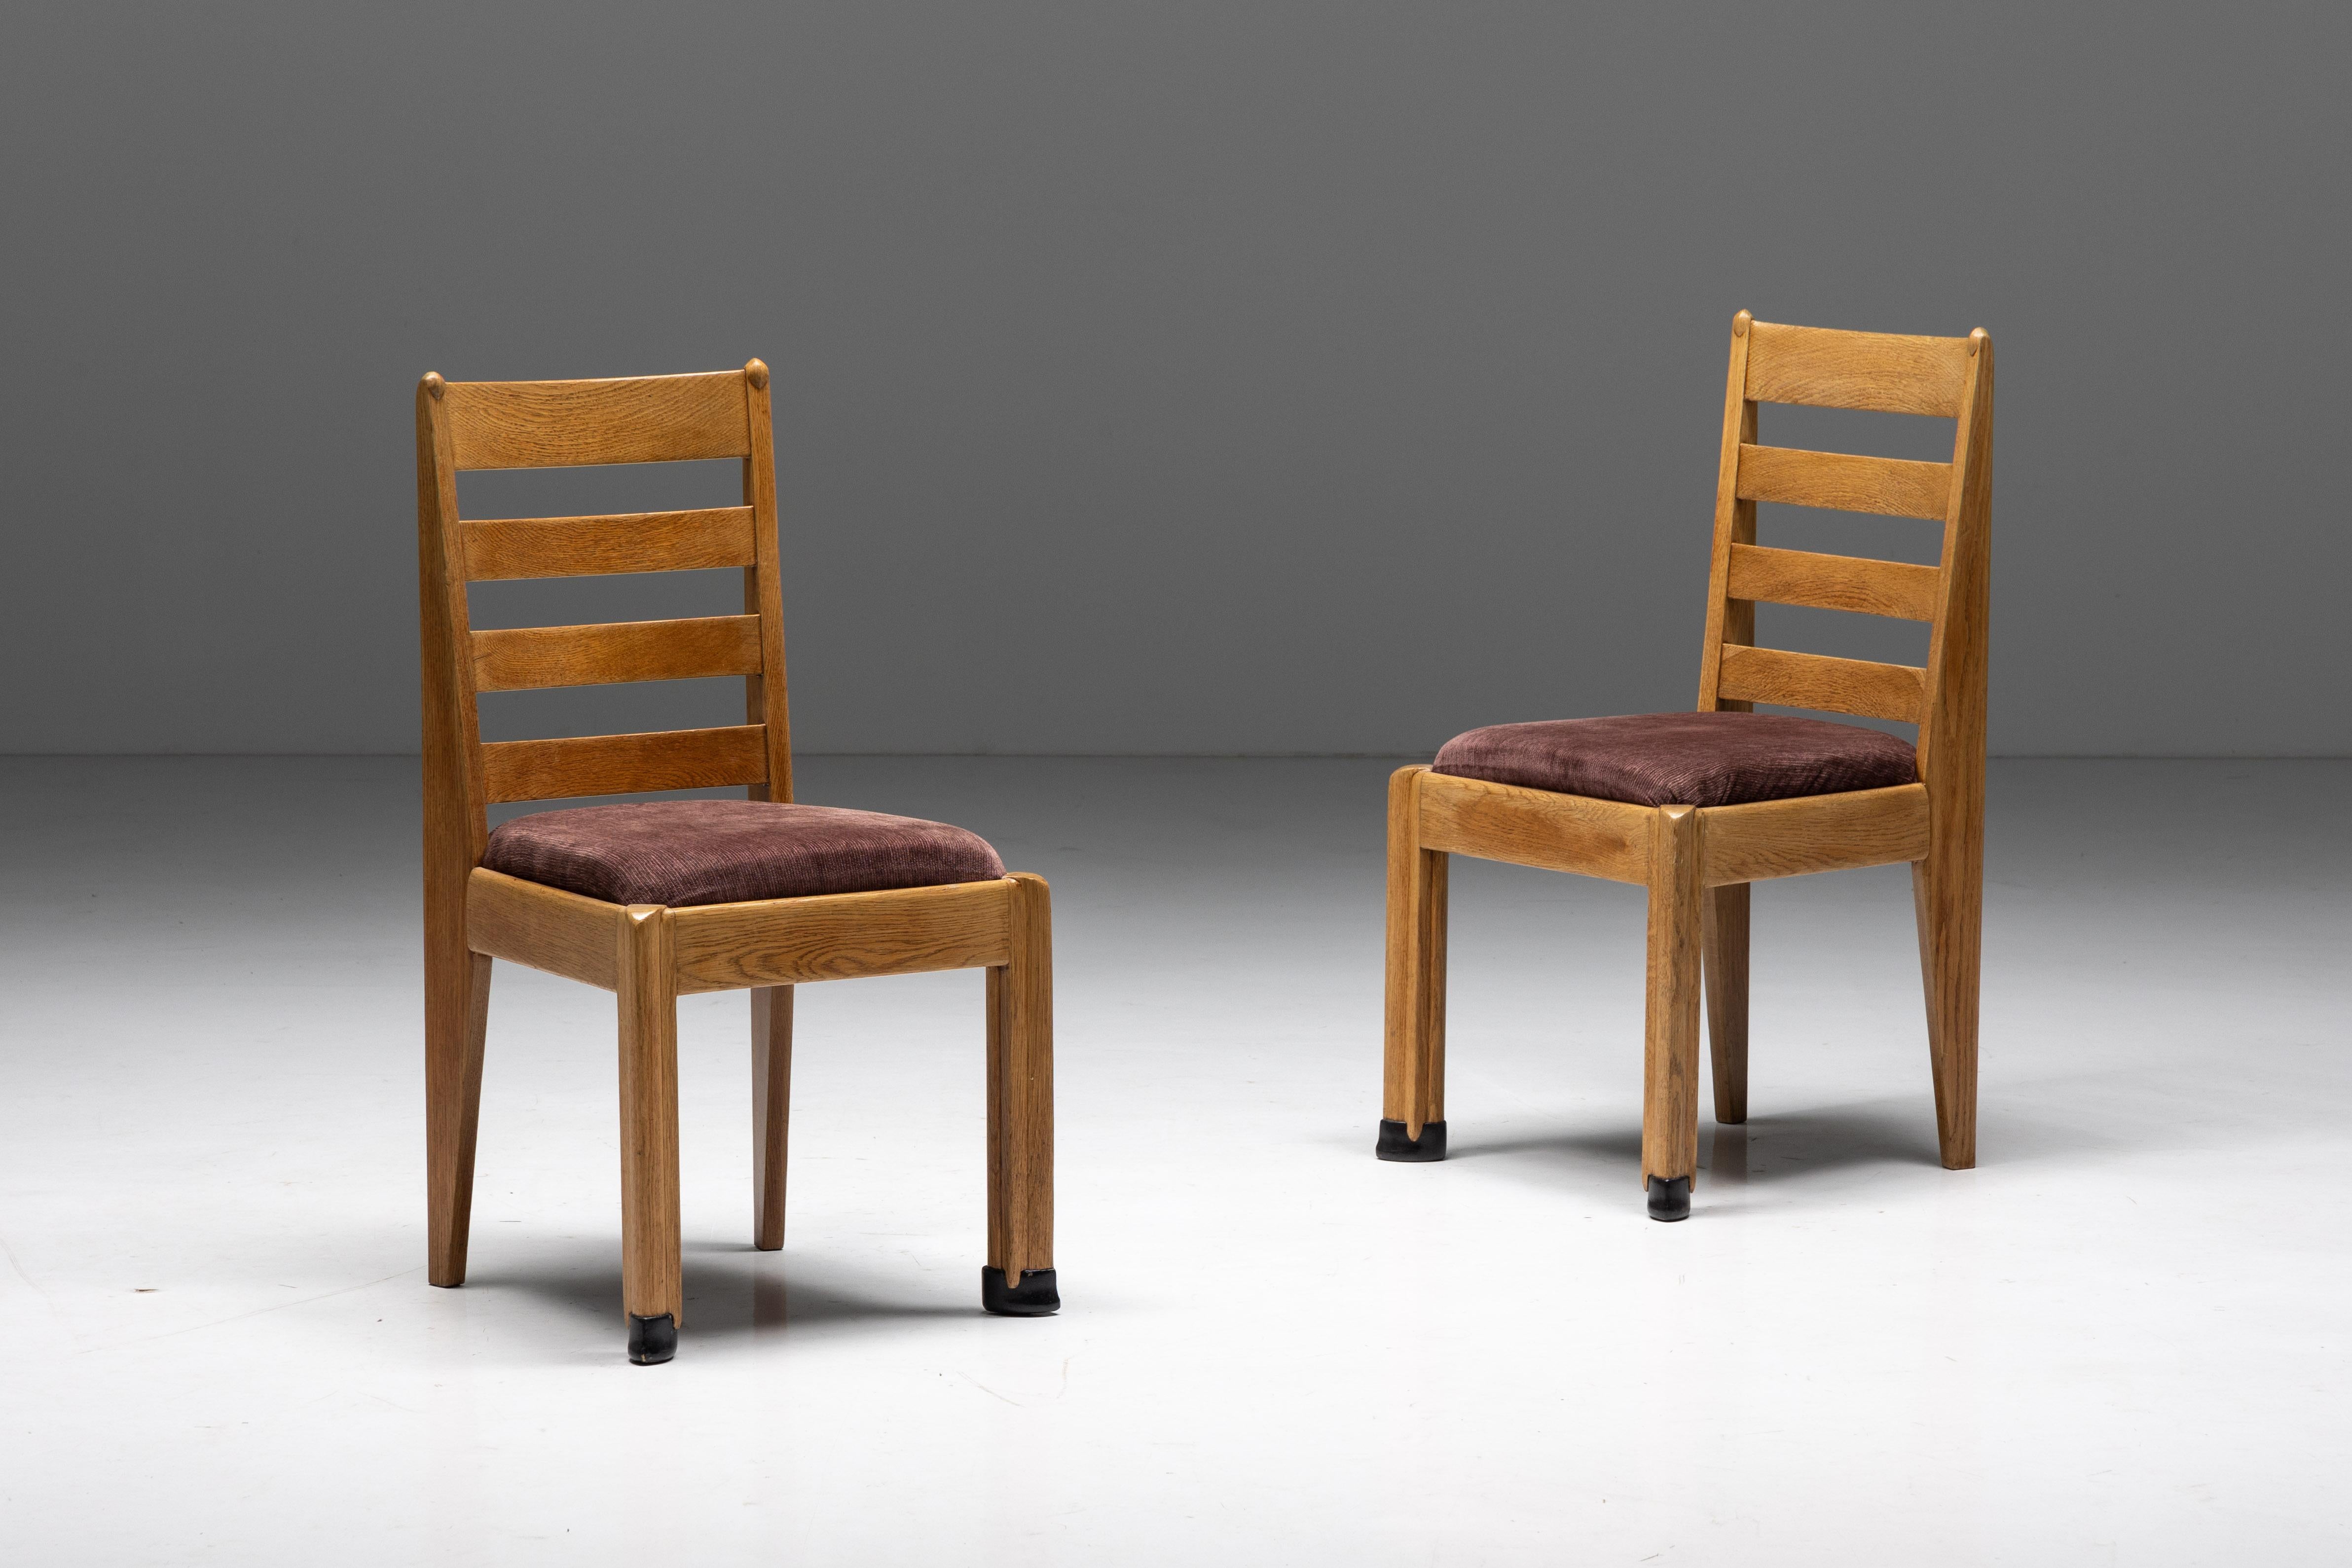 Chaises de salle à manger en chêne, époque Art déco néerlandais, école de La Haye, 1928. Minimaliste et moderne pour l'époque. Un véritable objet d'avant-garde. Il s'agit certainement d'une source d'inspiration pour des designers The Modern